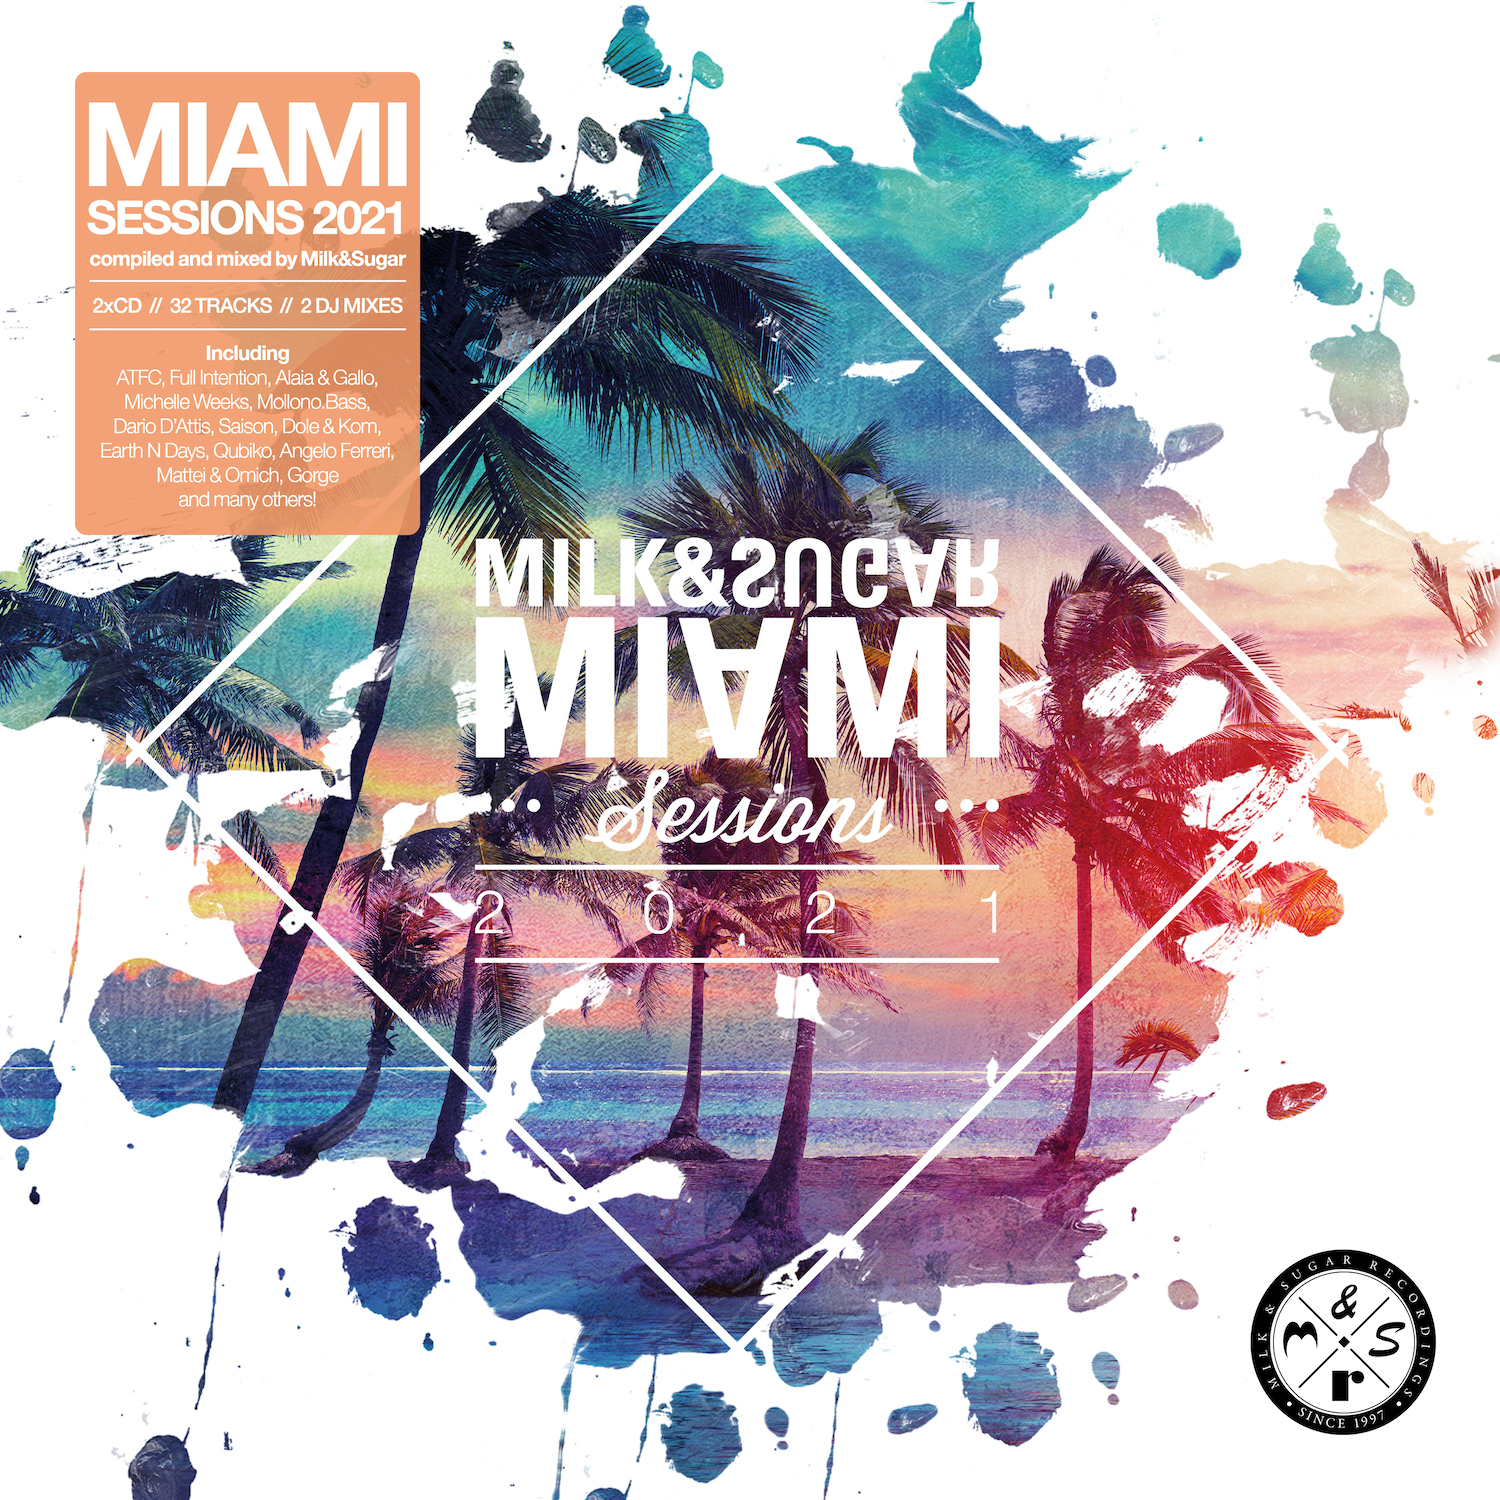 Milk & Sugar "Miami Sessions 2021"